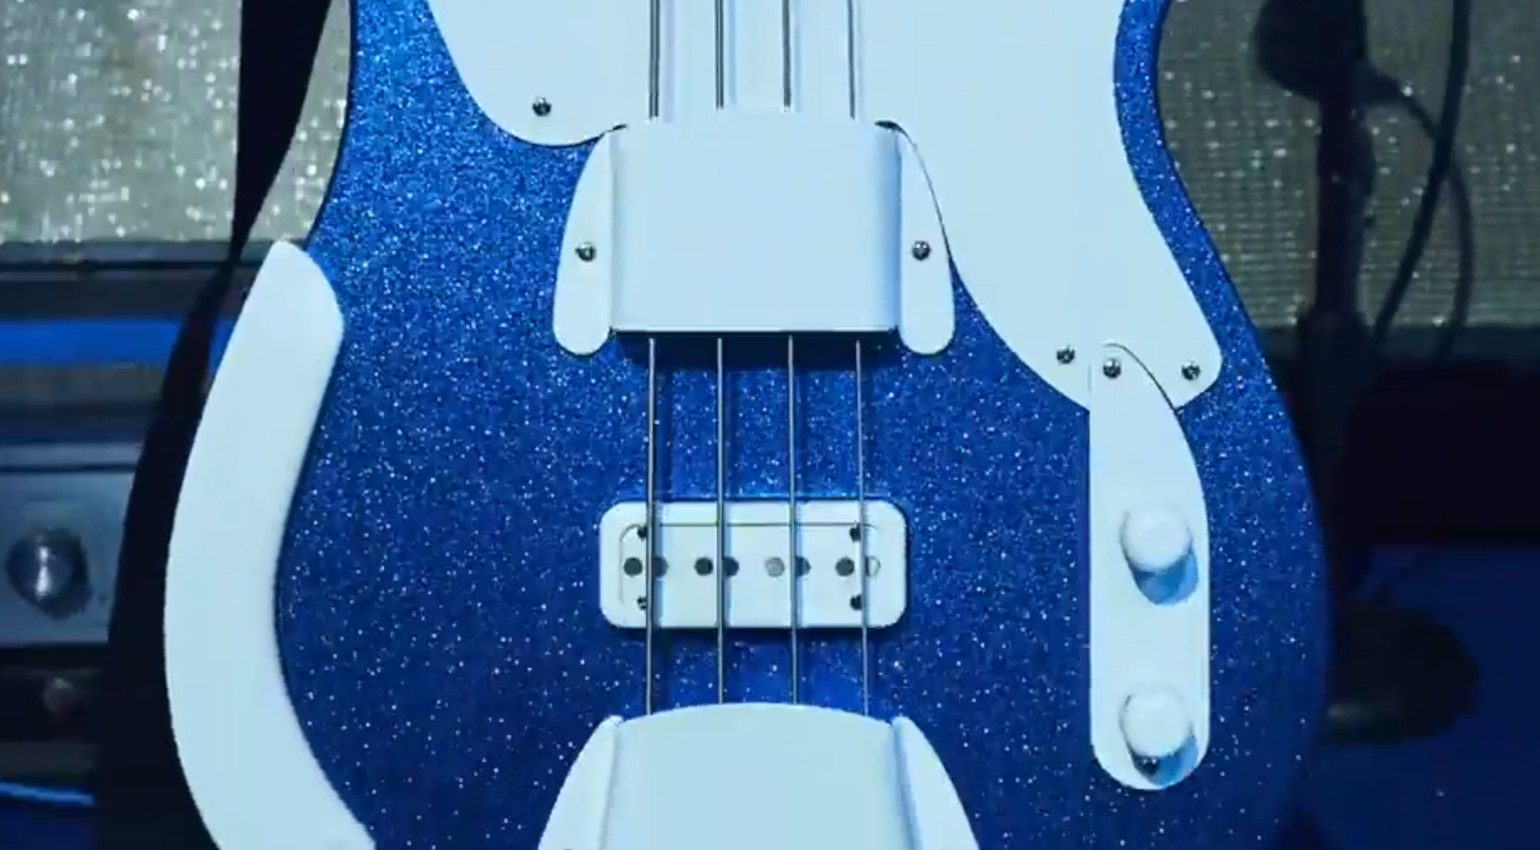 Fender Telecaster Fretless Bass Jack White Pickups Potis